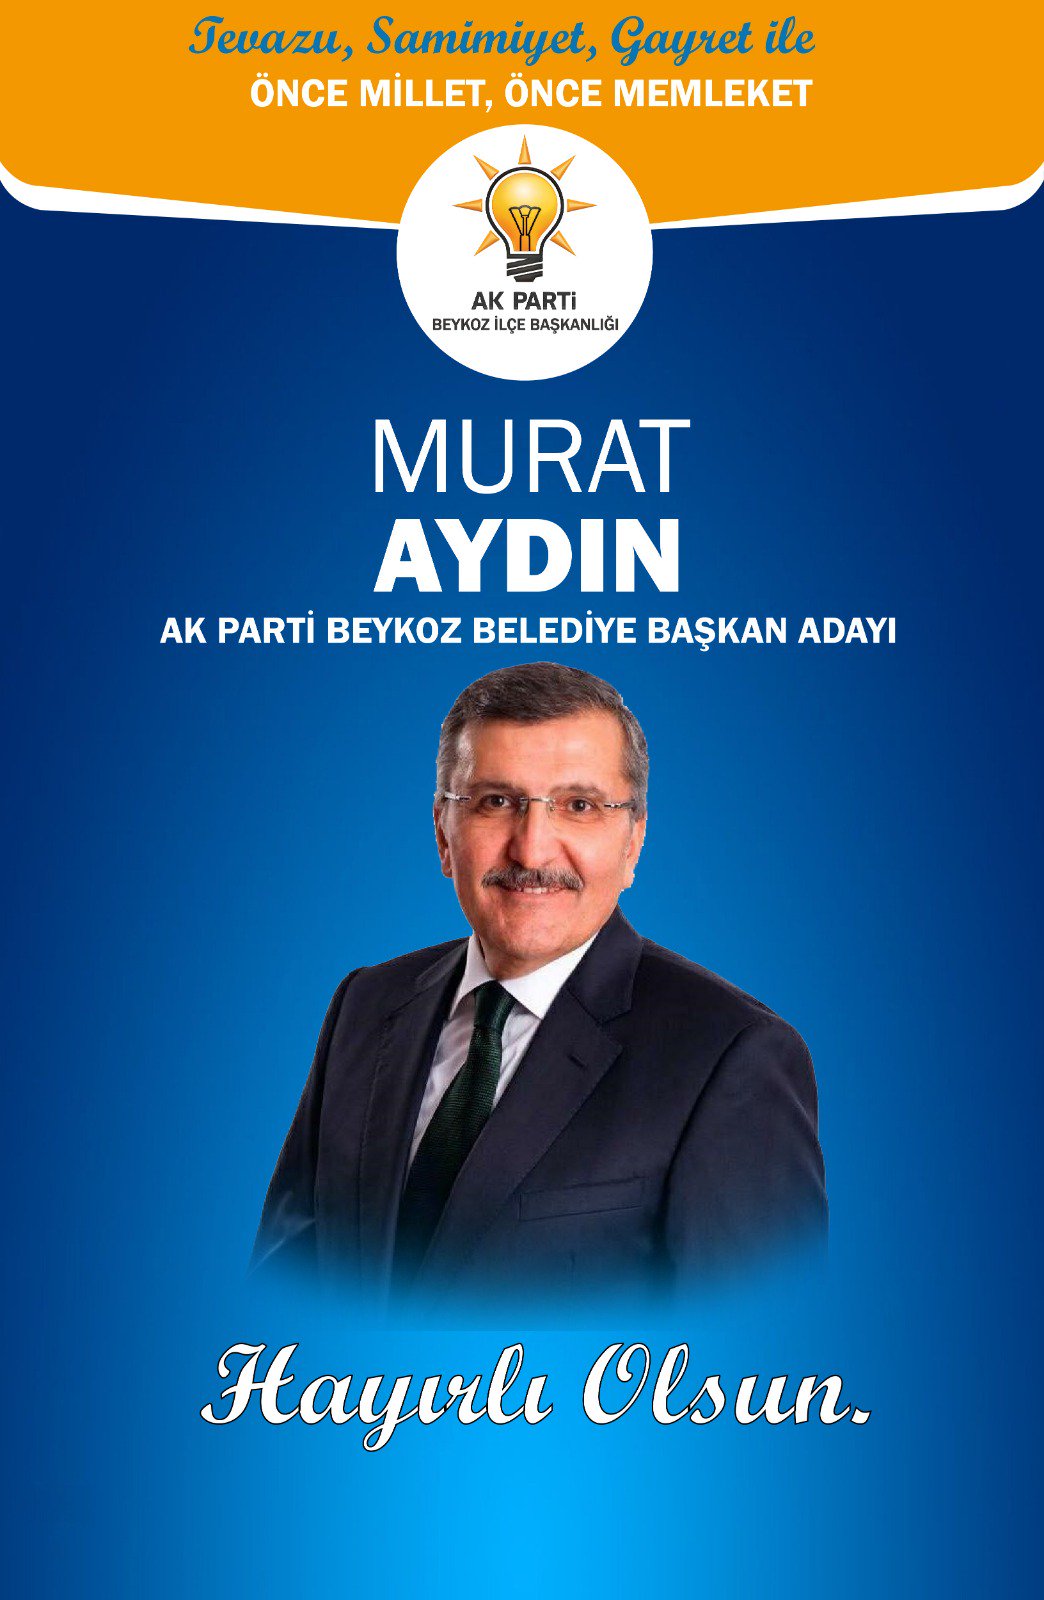 dwaas spanning Overtreding AK PARTİ BEYKOZ on Twitter: "AK Parti Beykoz Belediye Başkan Adayımız Murat  Aydın. Beykoz'umuza hayırlı uğurlu olsun. @murataydintr  https://t.co/KfhmOhr2e4" / Twitter